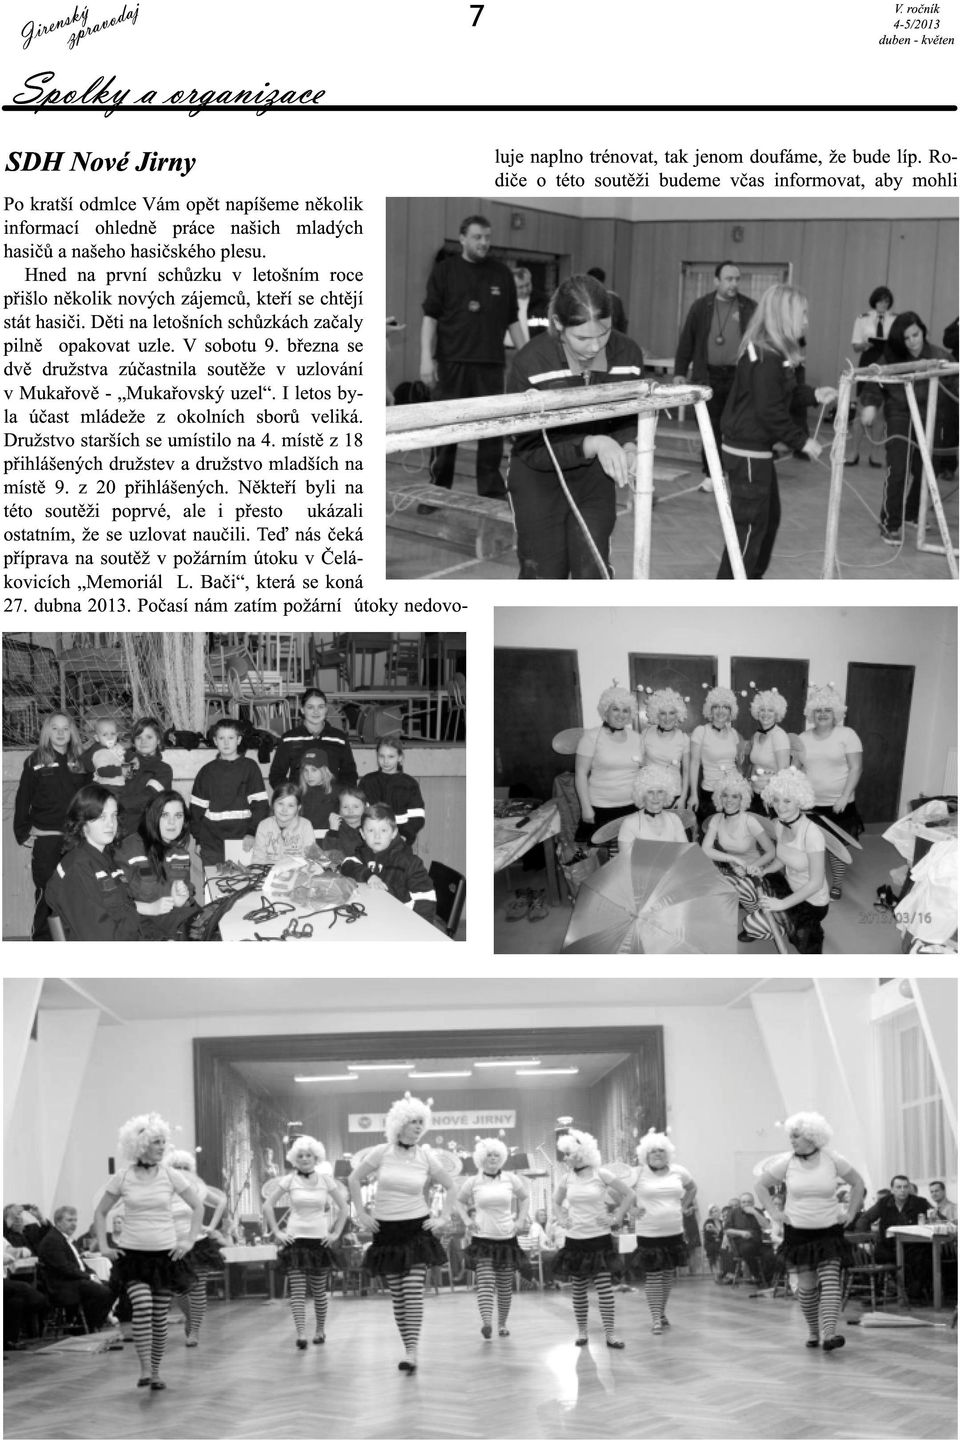 března se dvě družstva zúčastnila soutěže v uzlování v Mukařově - Mukařovský uzel. I letos byla účast mládeže z okolních sborů veliká. Družstvo starších se umístilo na 4.